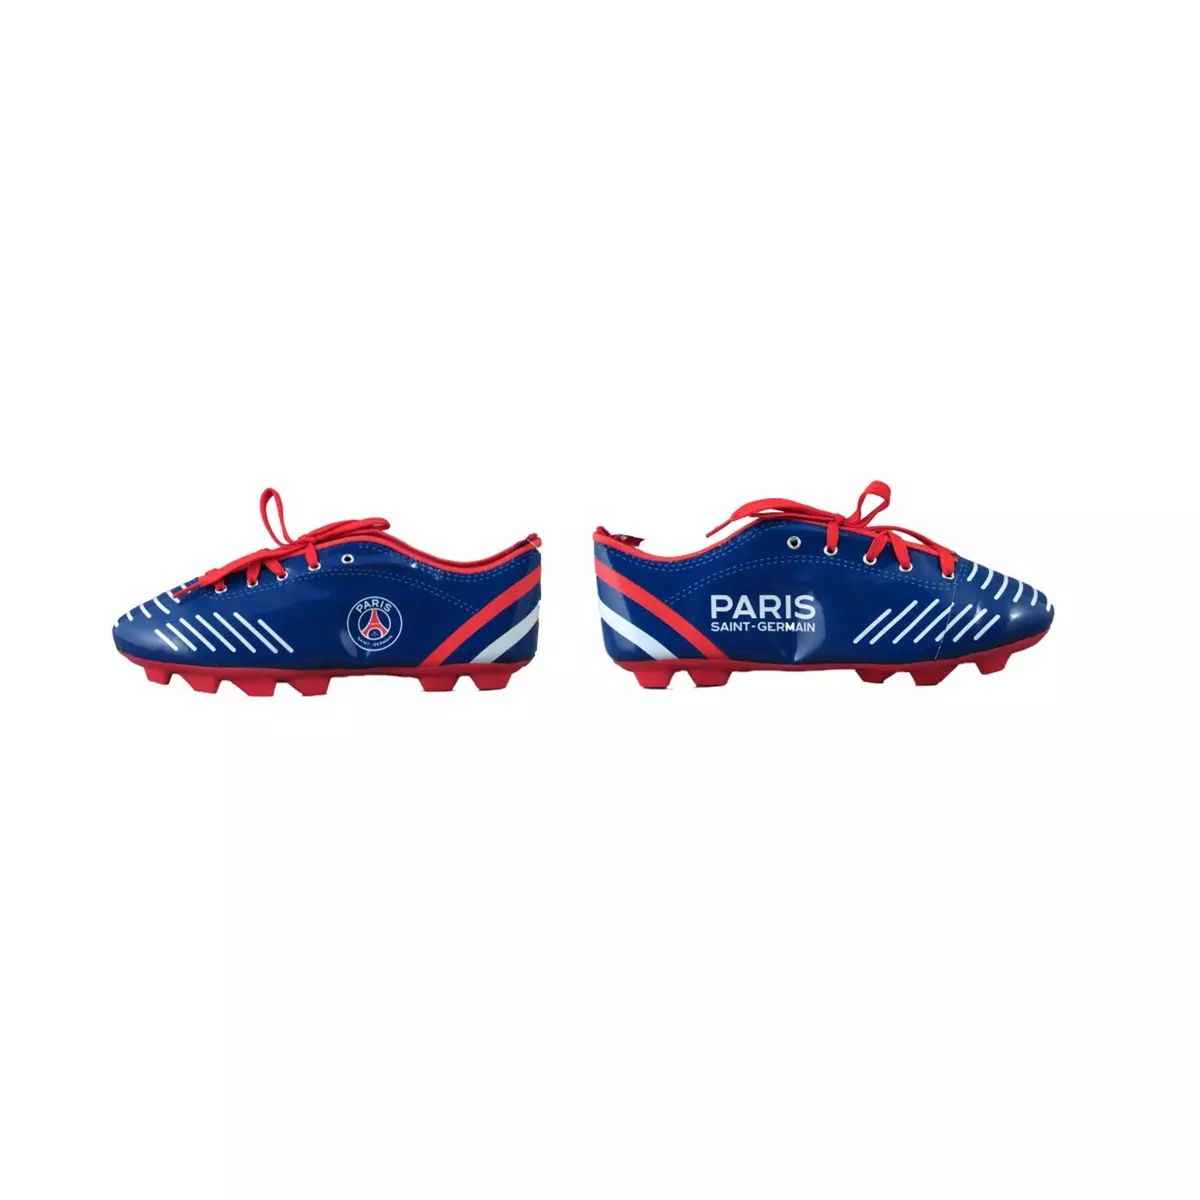 Trousse bleue forme chaussure de football PSG